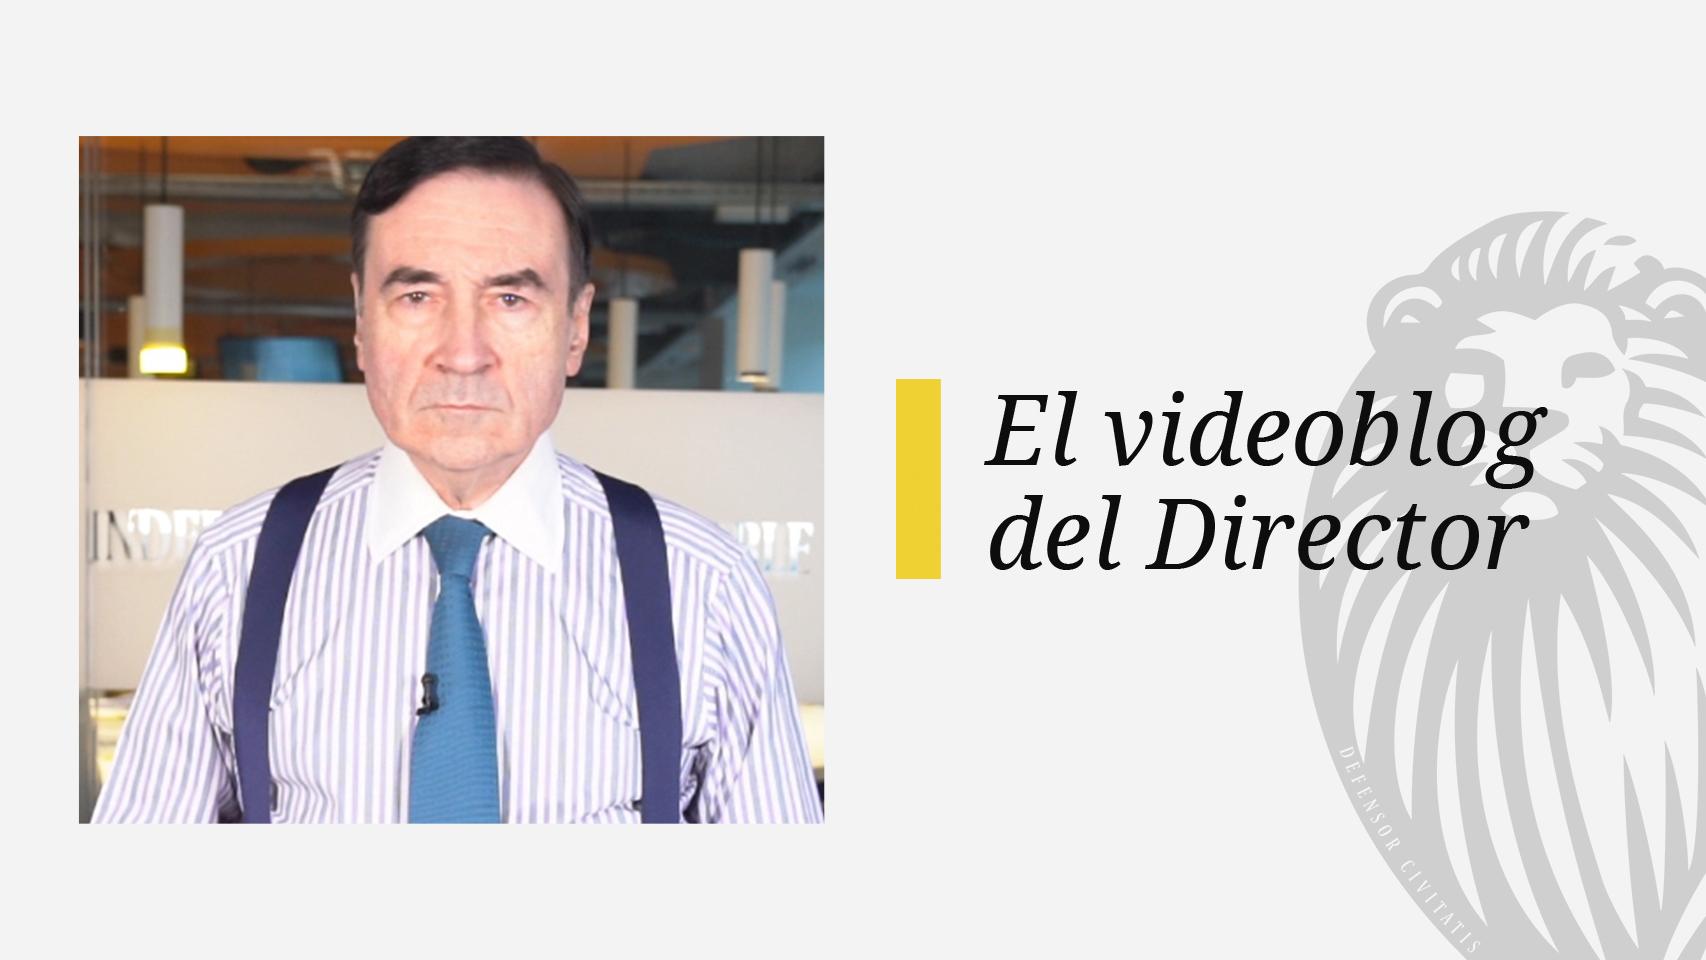 El videoblog del Director: Felipe “el Renovador” entierra a su padre con ayuda de Sánchez